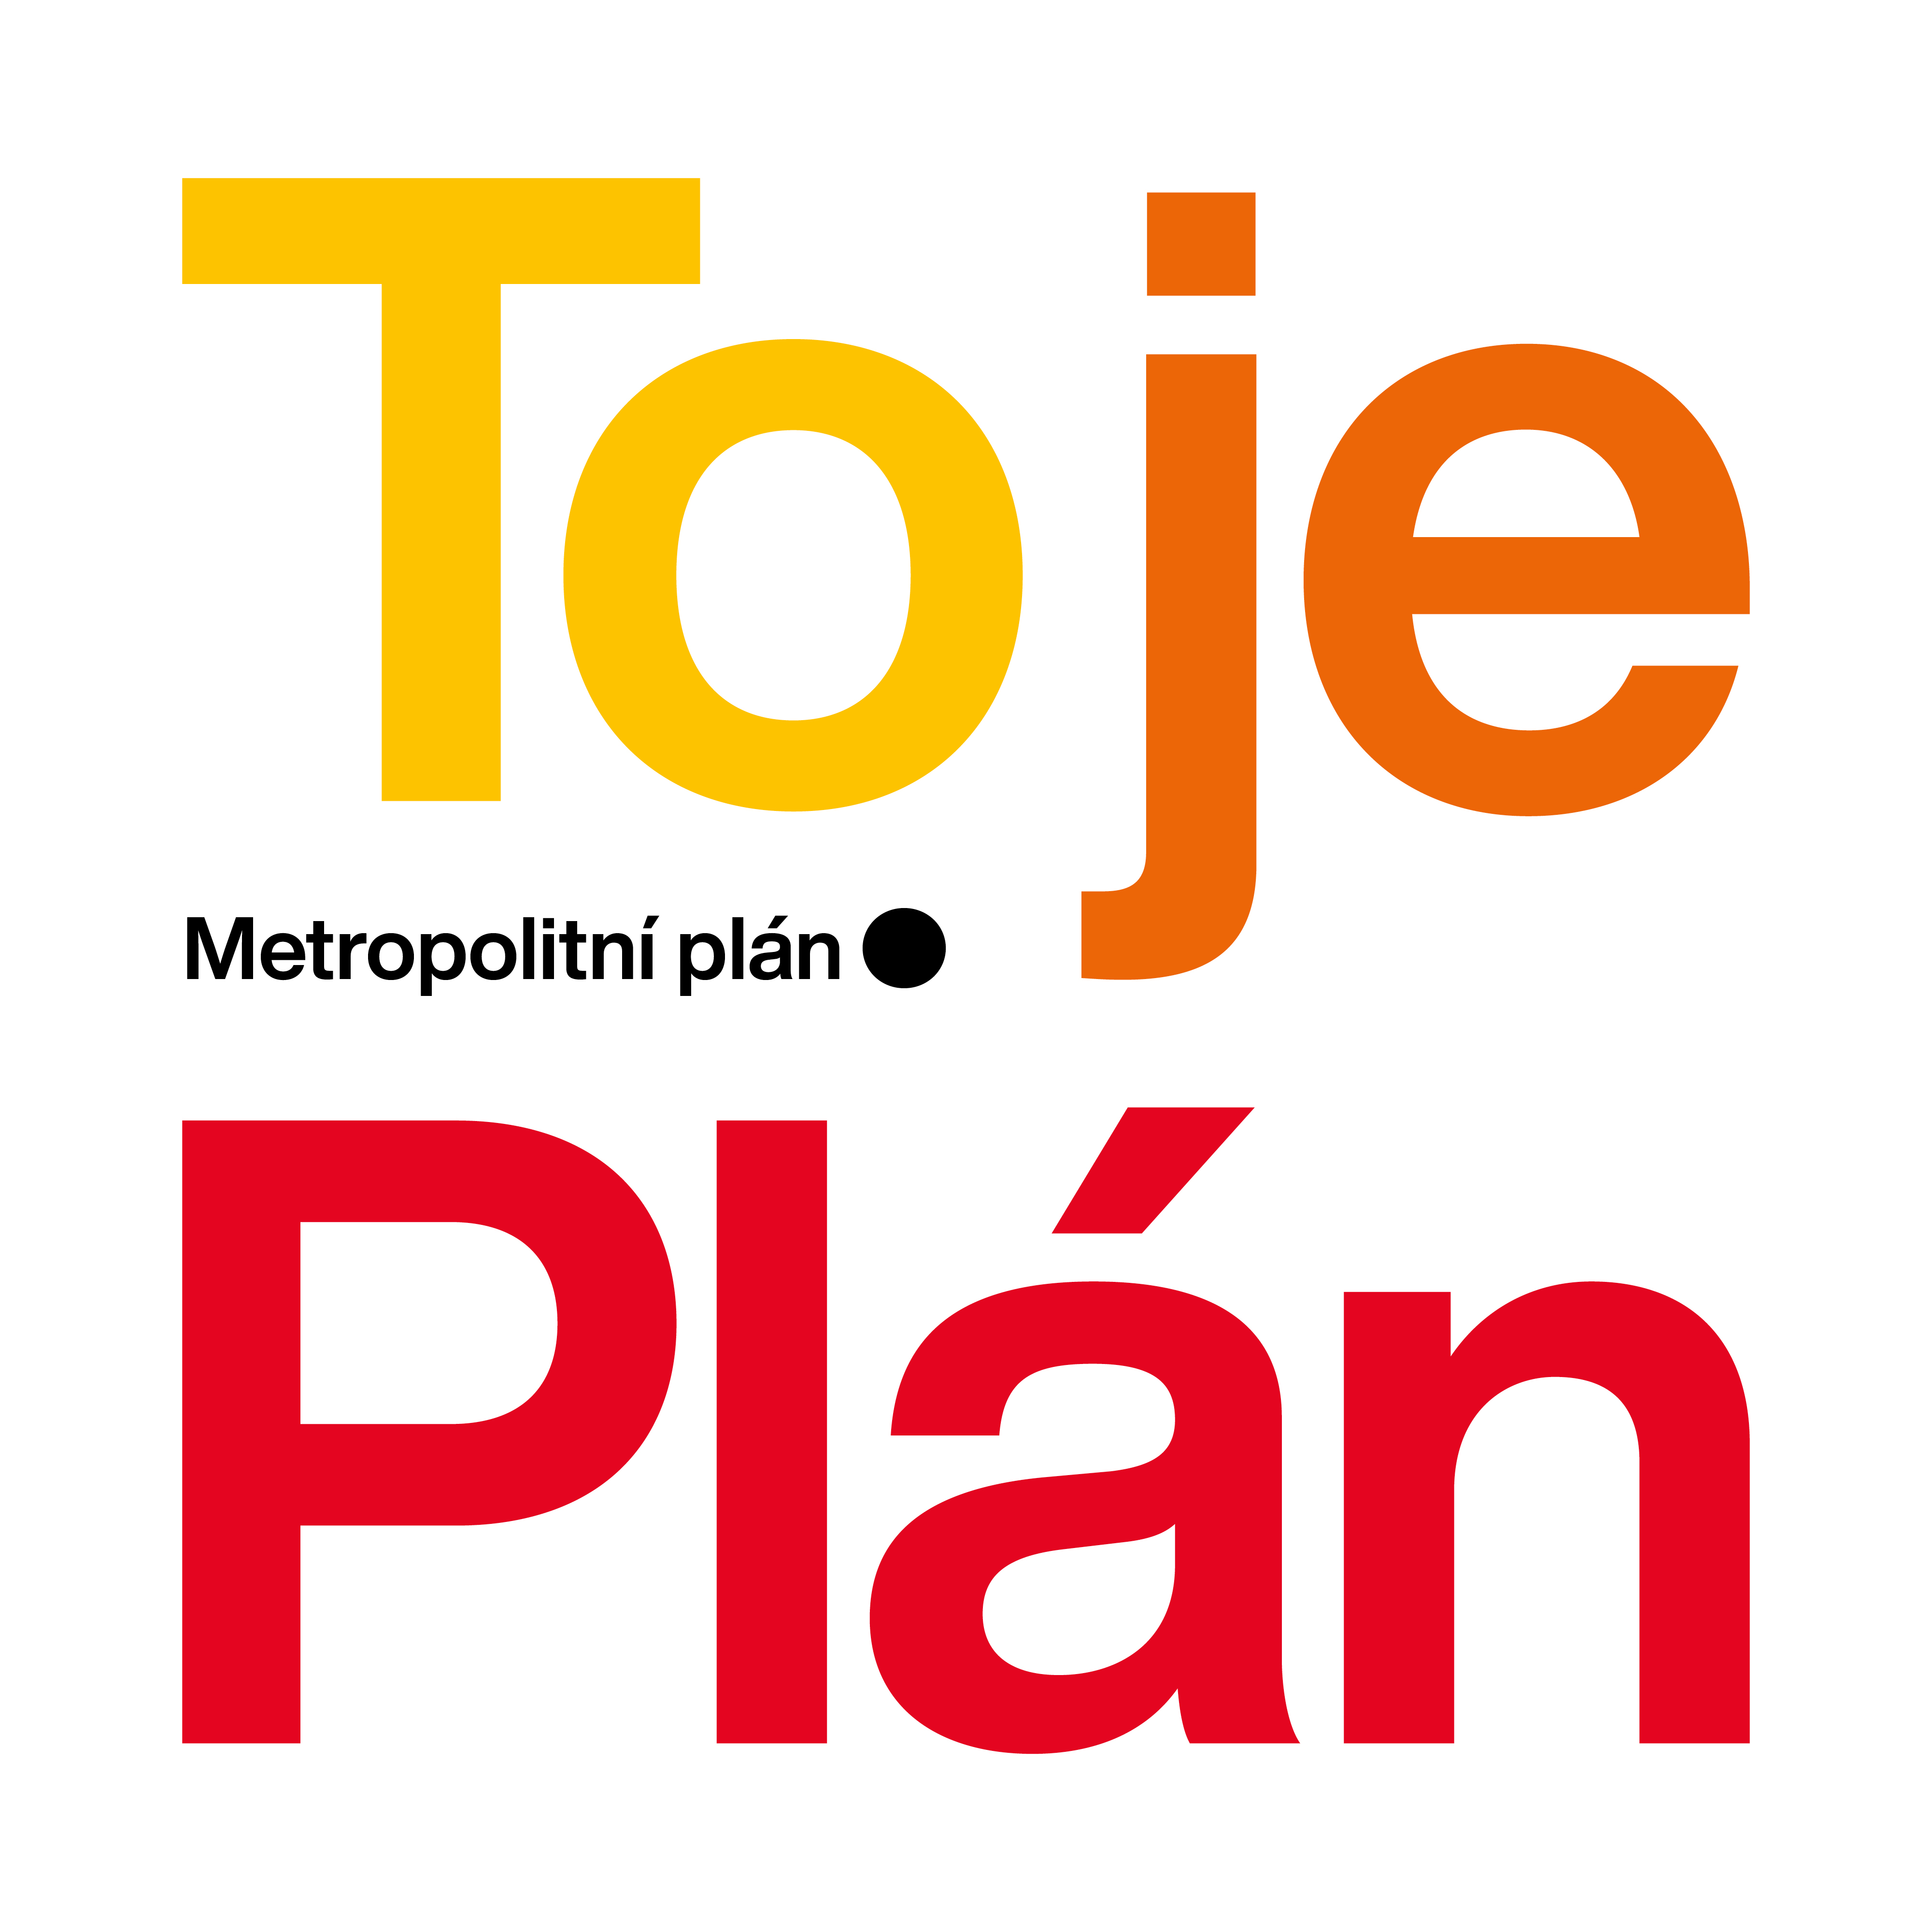 Metropolitní plán - logo